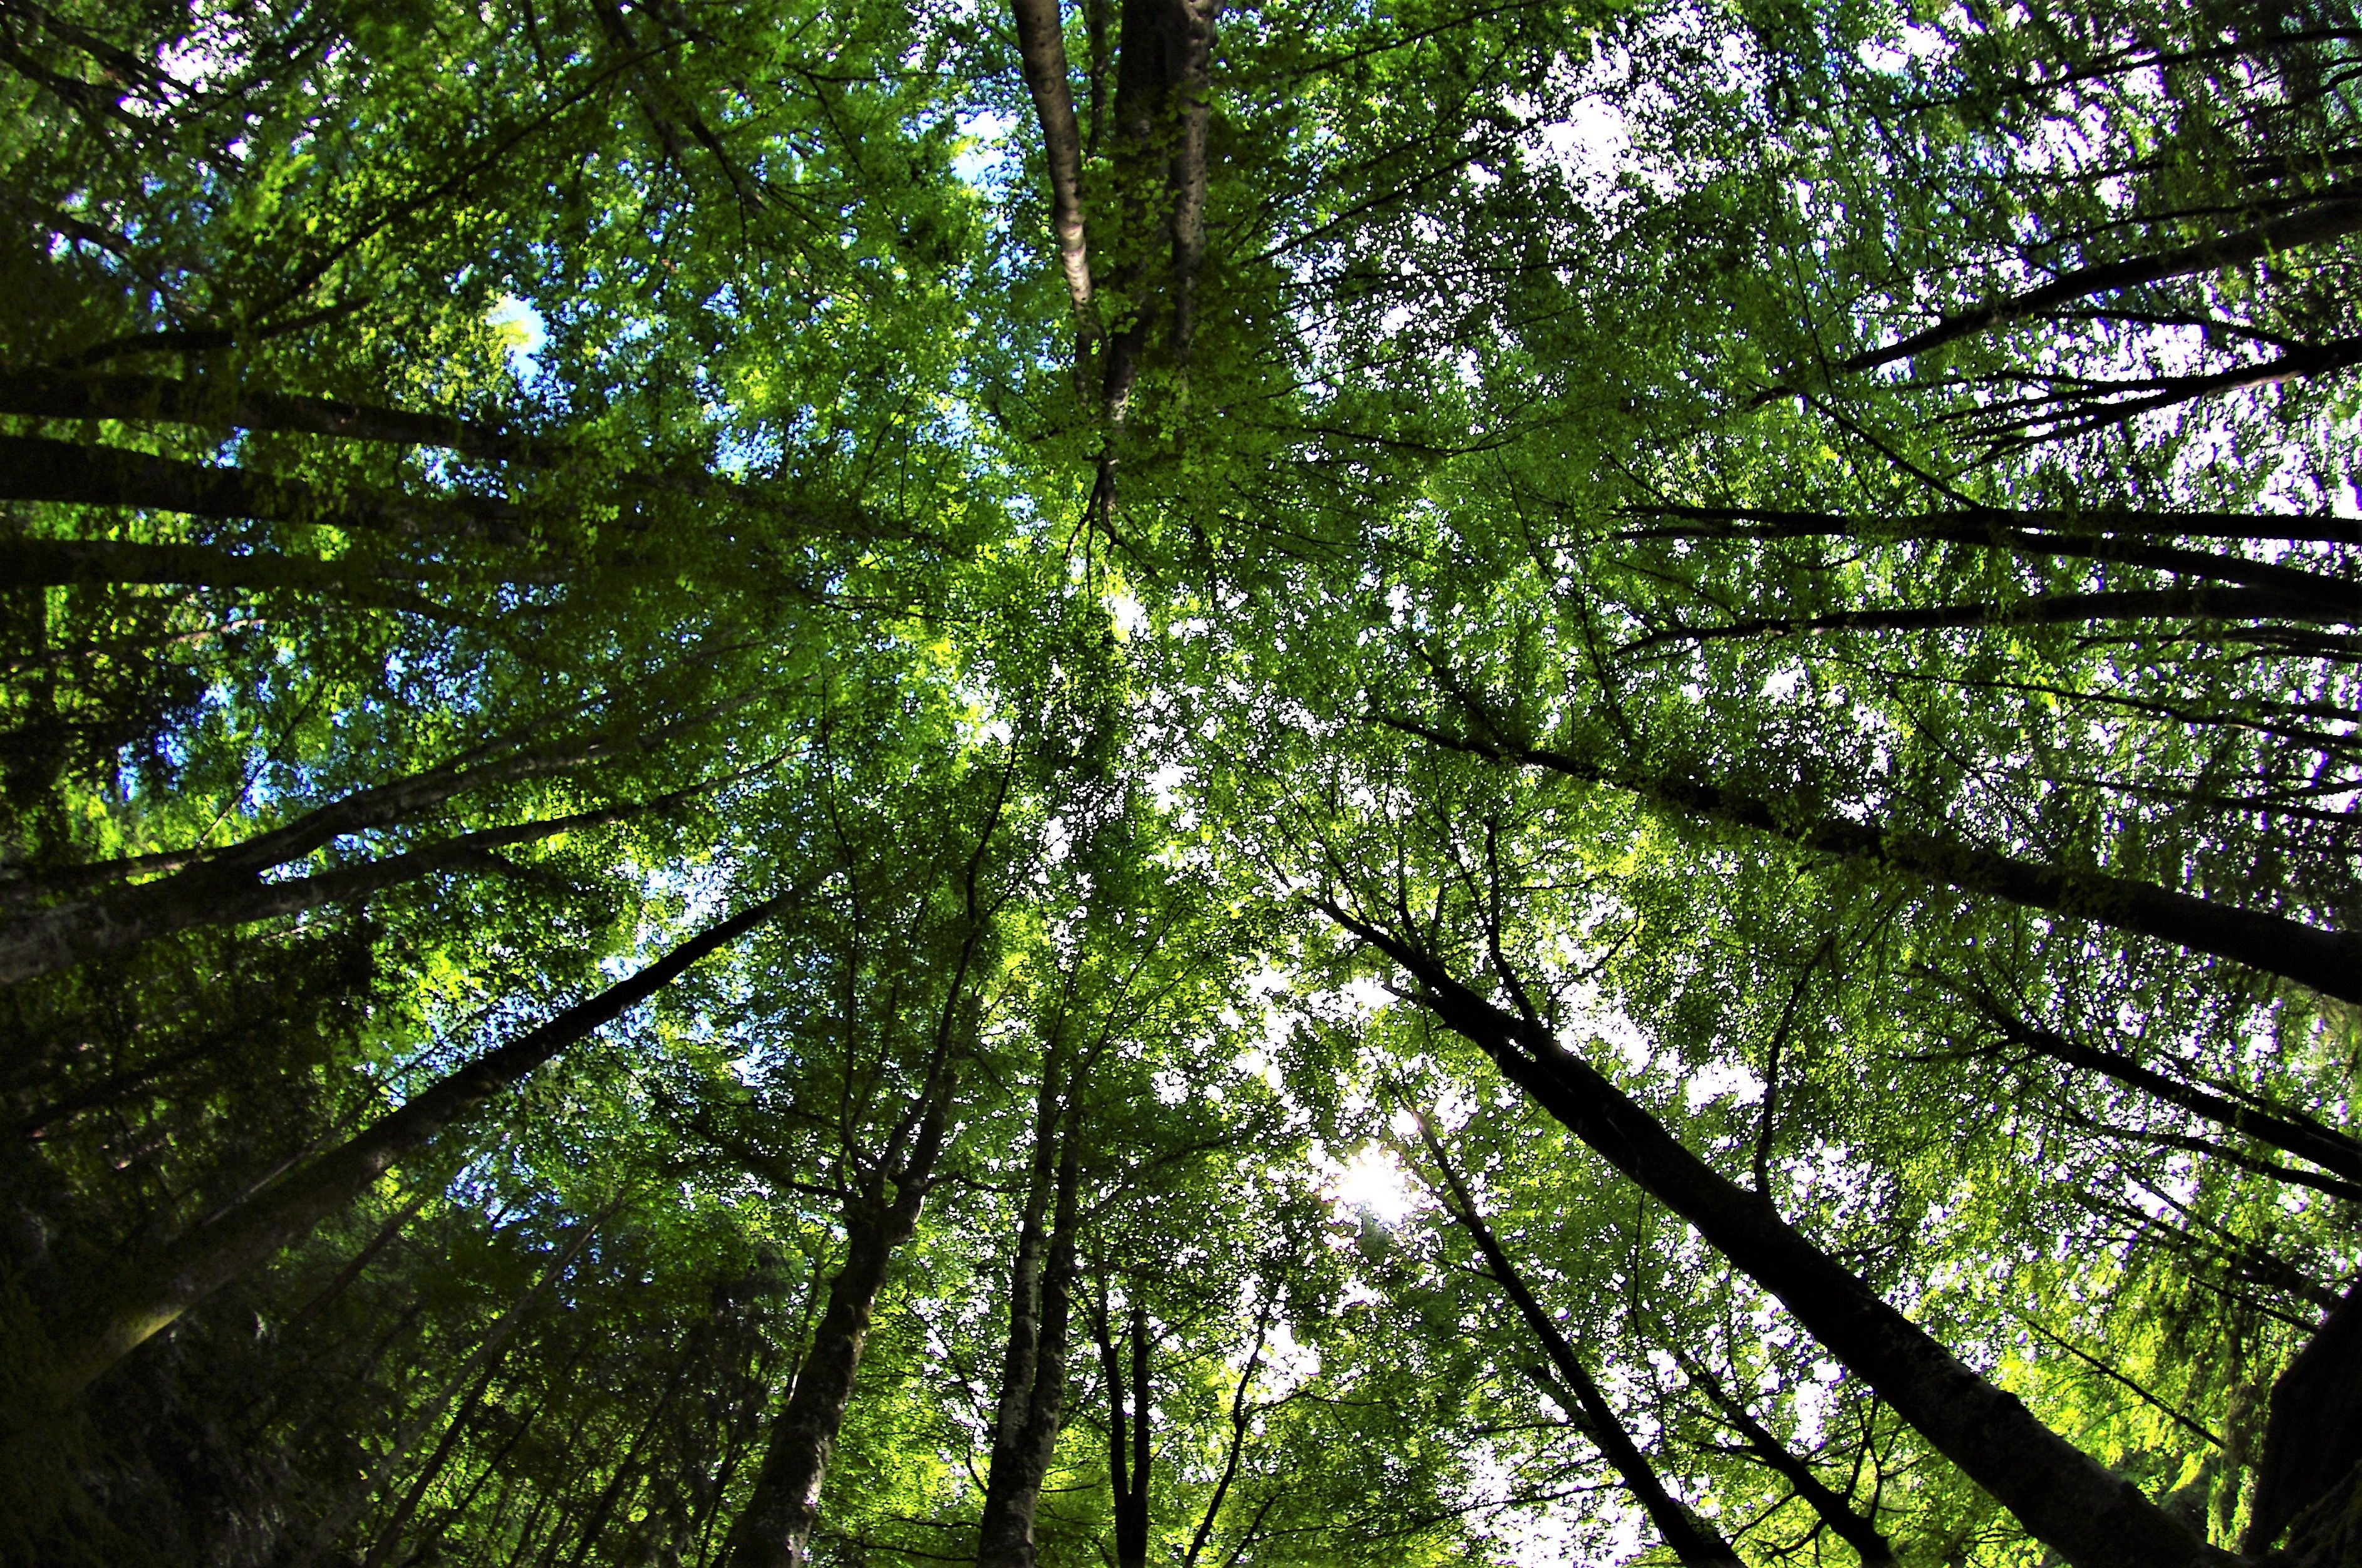 360 graden opname van een boomkruin in een Europees beukenbos vanaf de grond